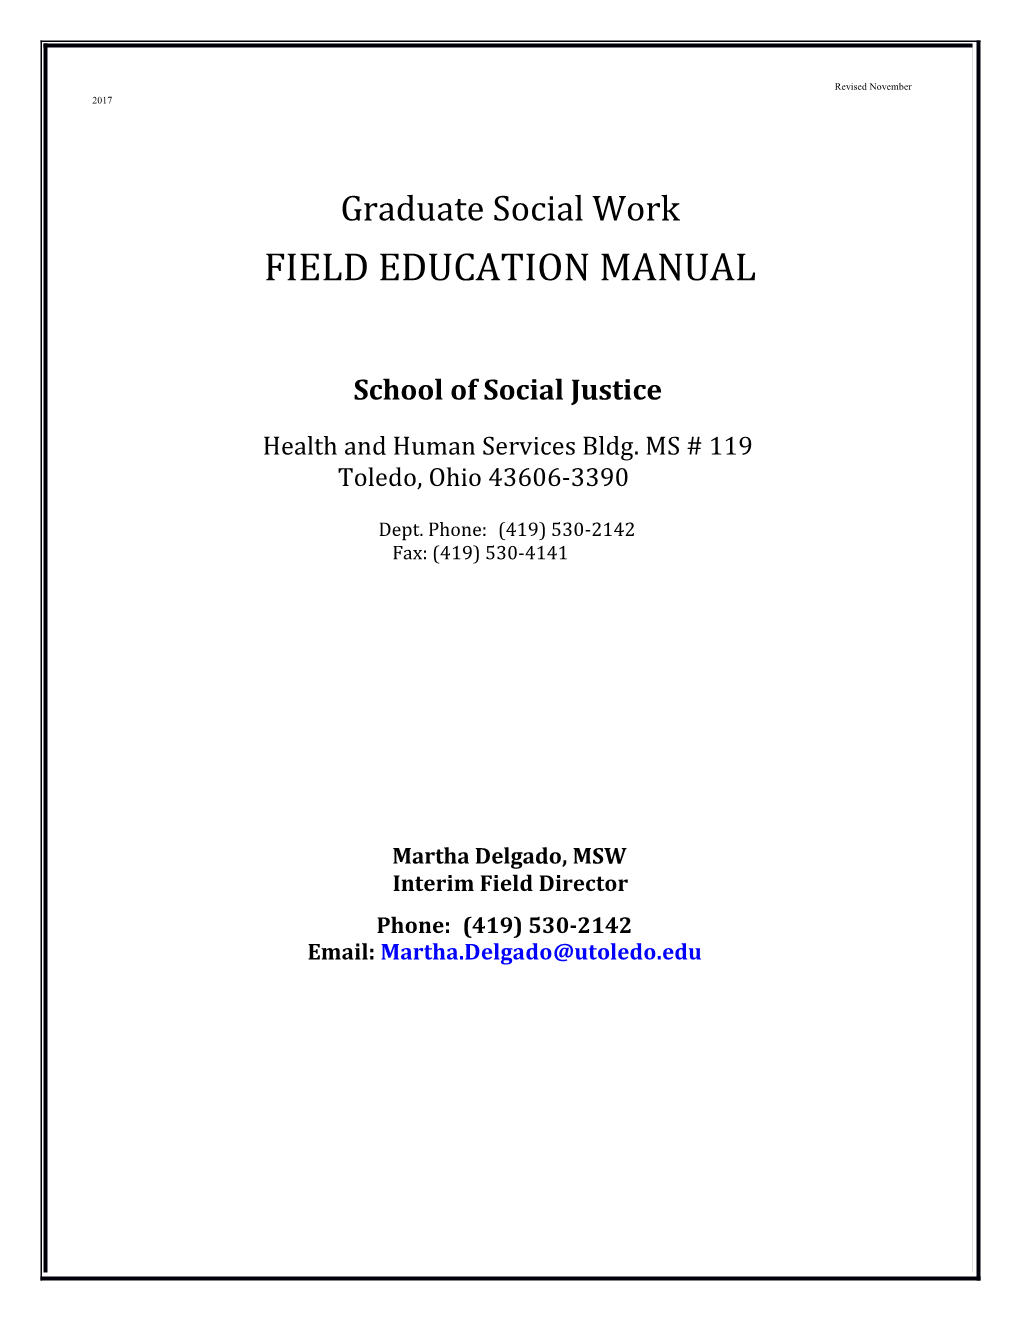 Graduate Social Work